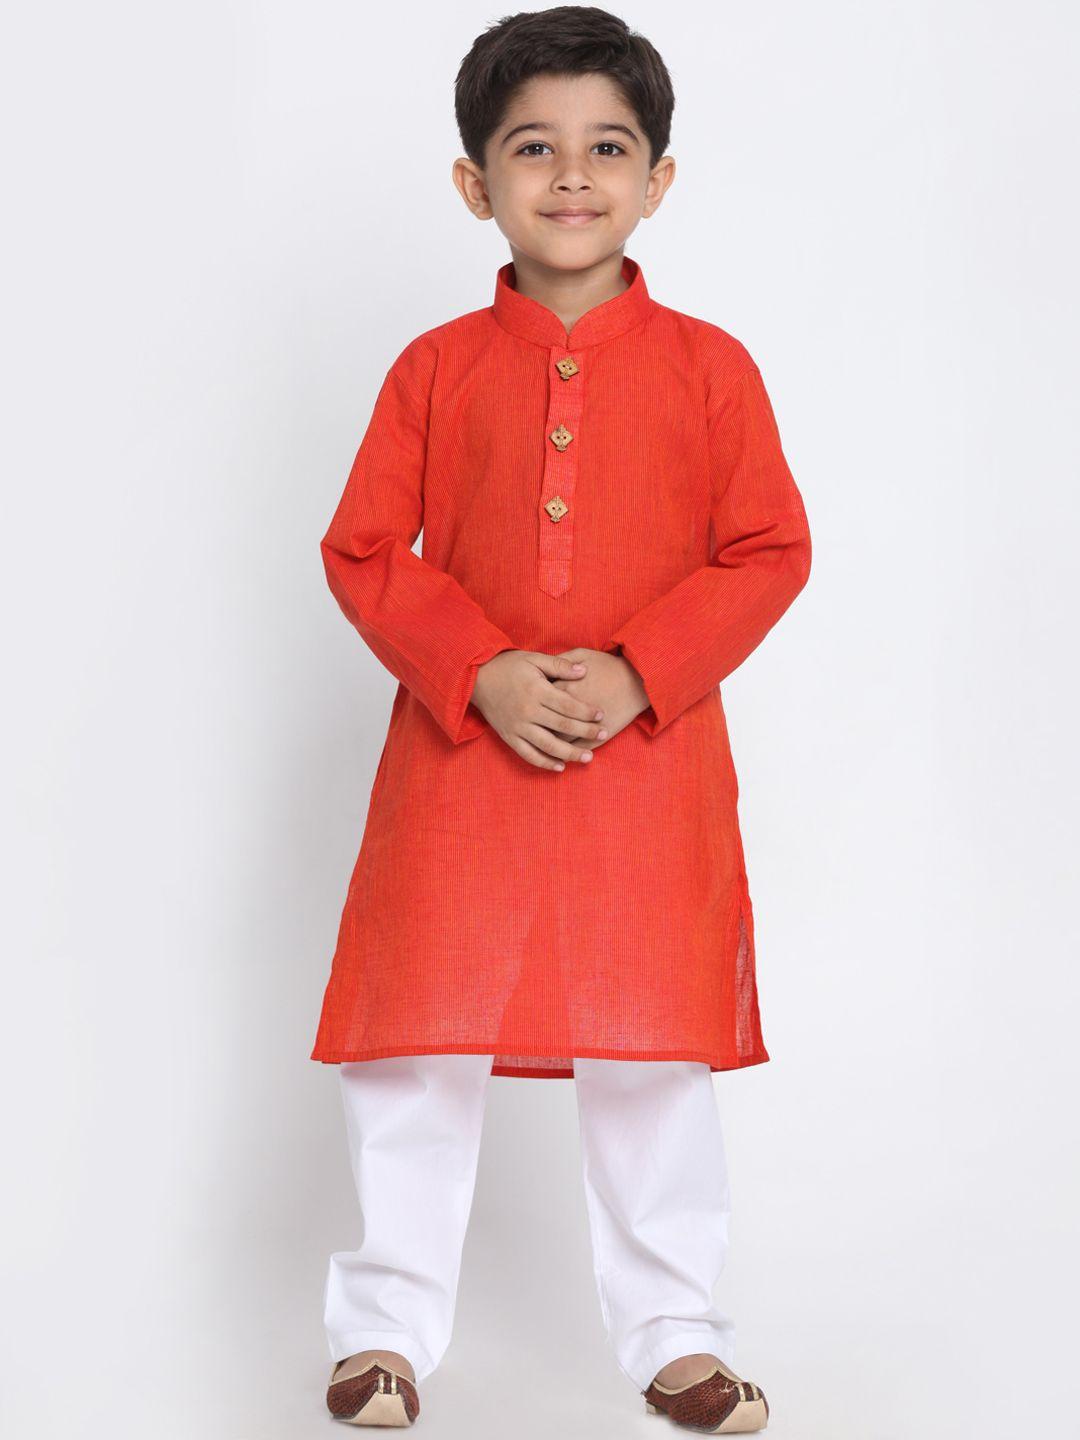 jbn creation boys orange & white striped cotton kurta with churidar